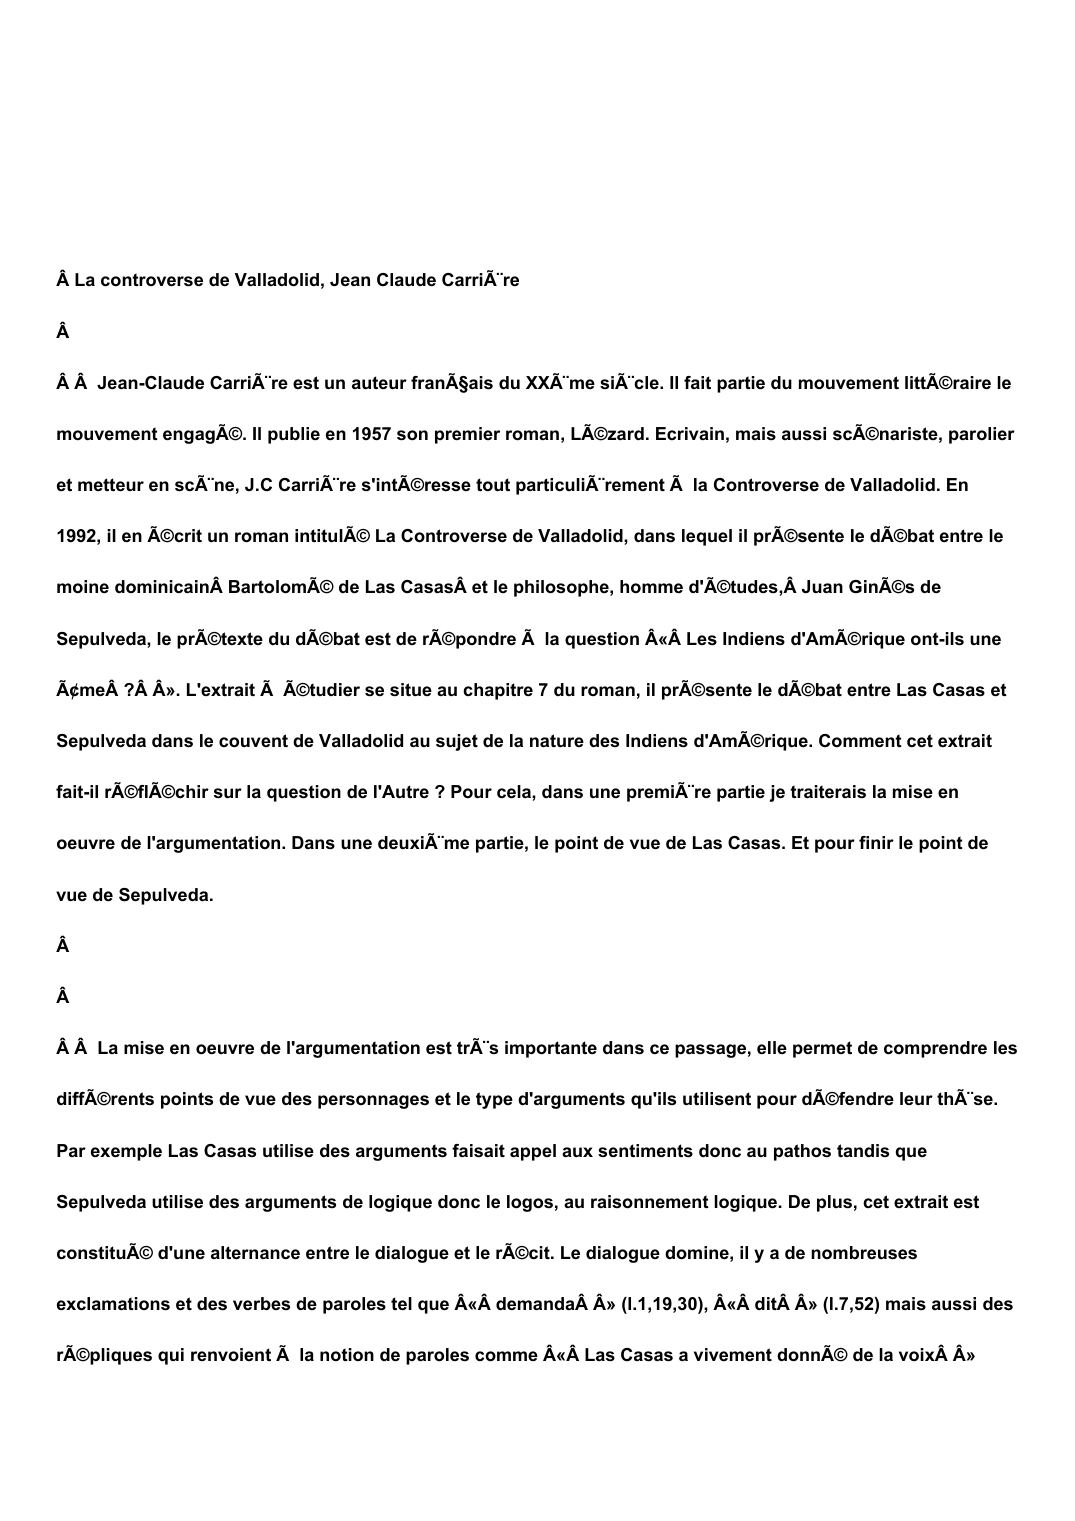 Prévisualisation du document  La controverse de Valladolid, Jean Claude Carrière      Jean-Claude Carrière est un auteur français du XXème siècle.